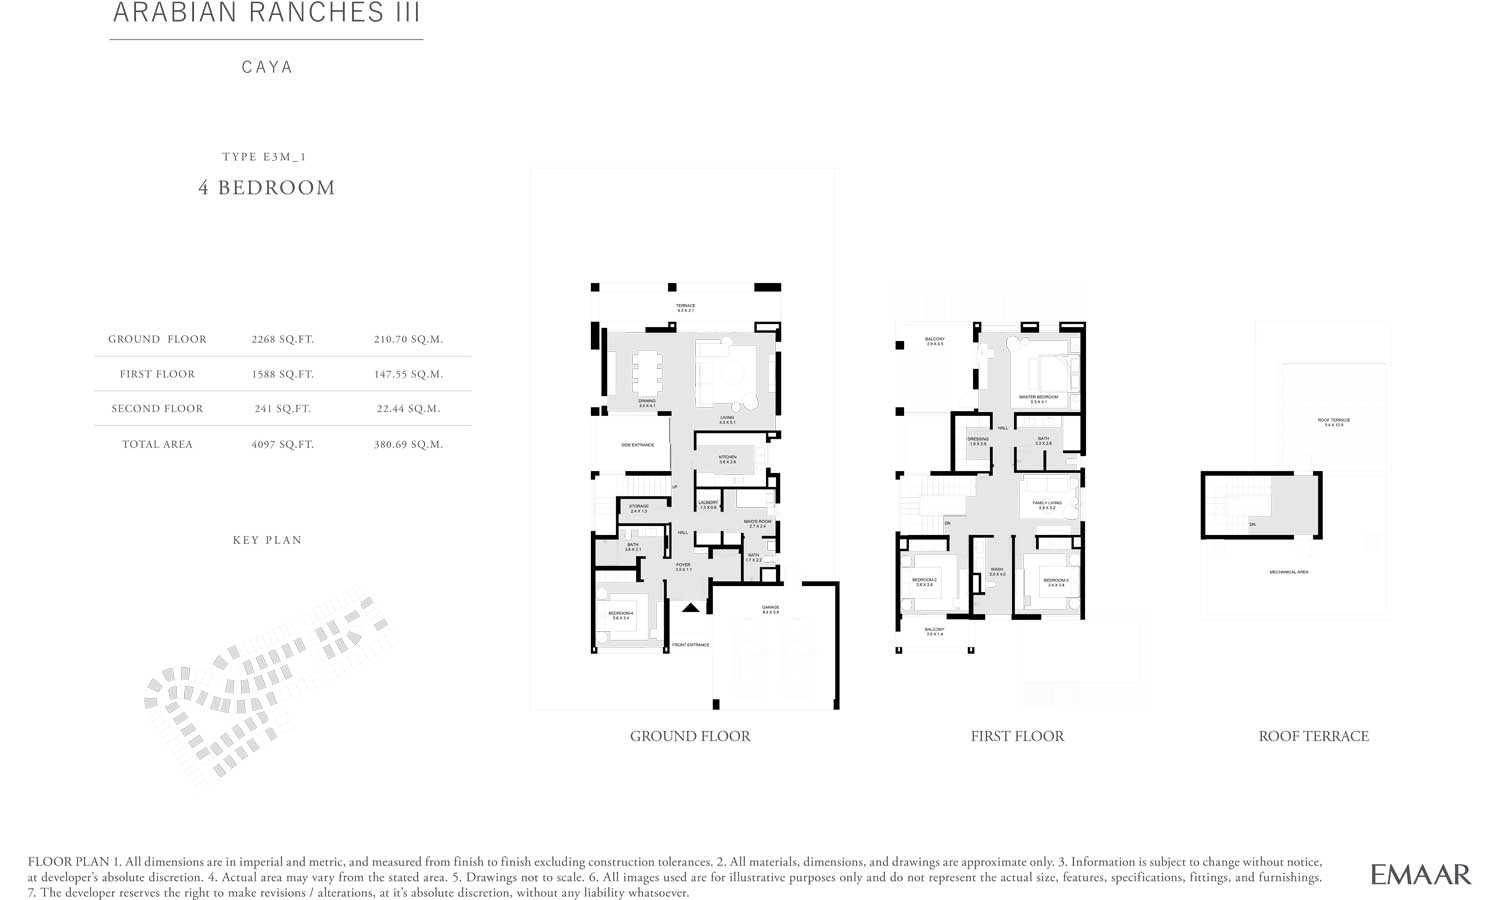 4-Bedroom-Floor-Plan-Caya-Arabian-Ranches-3-type